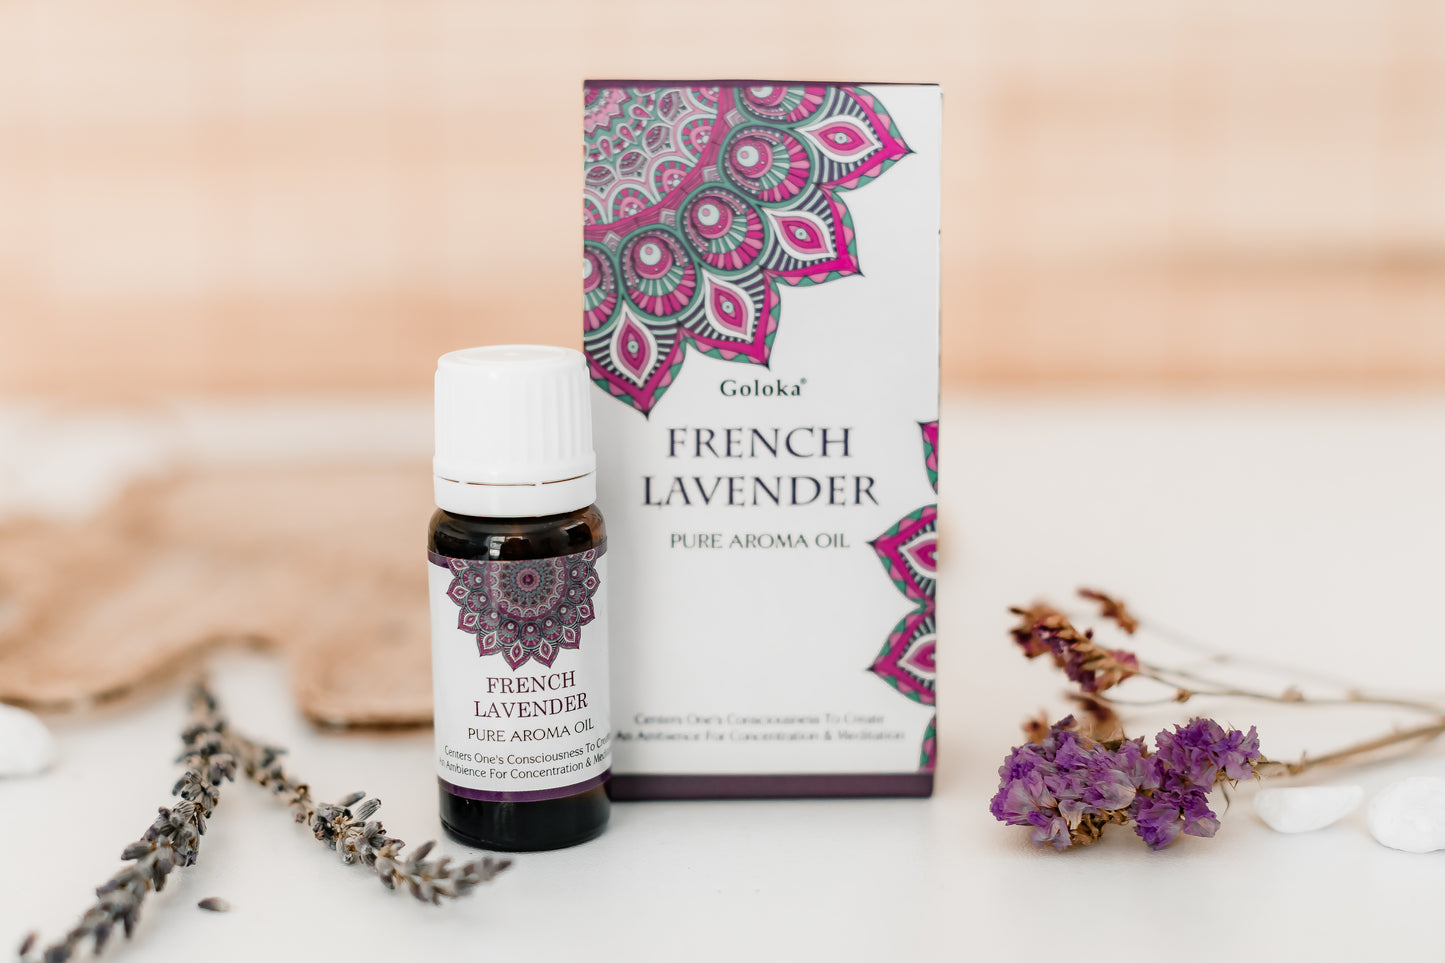 Aromaöl Lavendel - Duft “French Lavender” von Goloka, 10ml Flasche